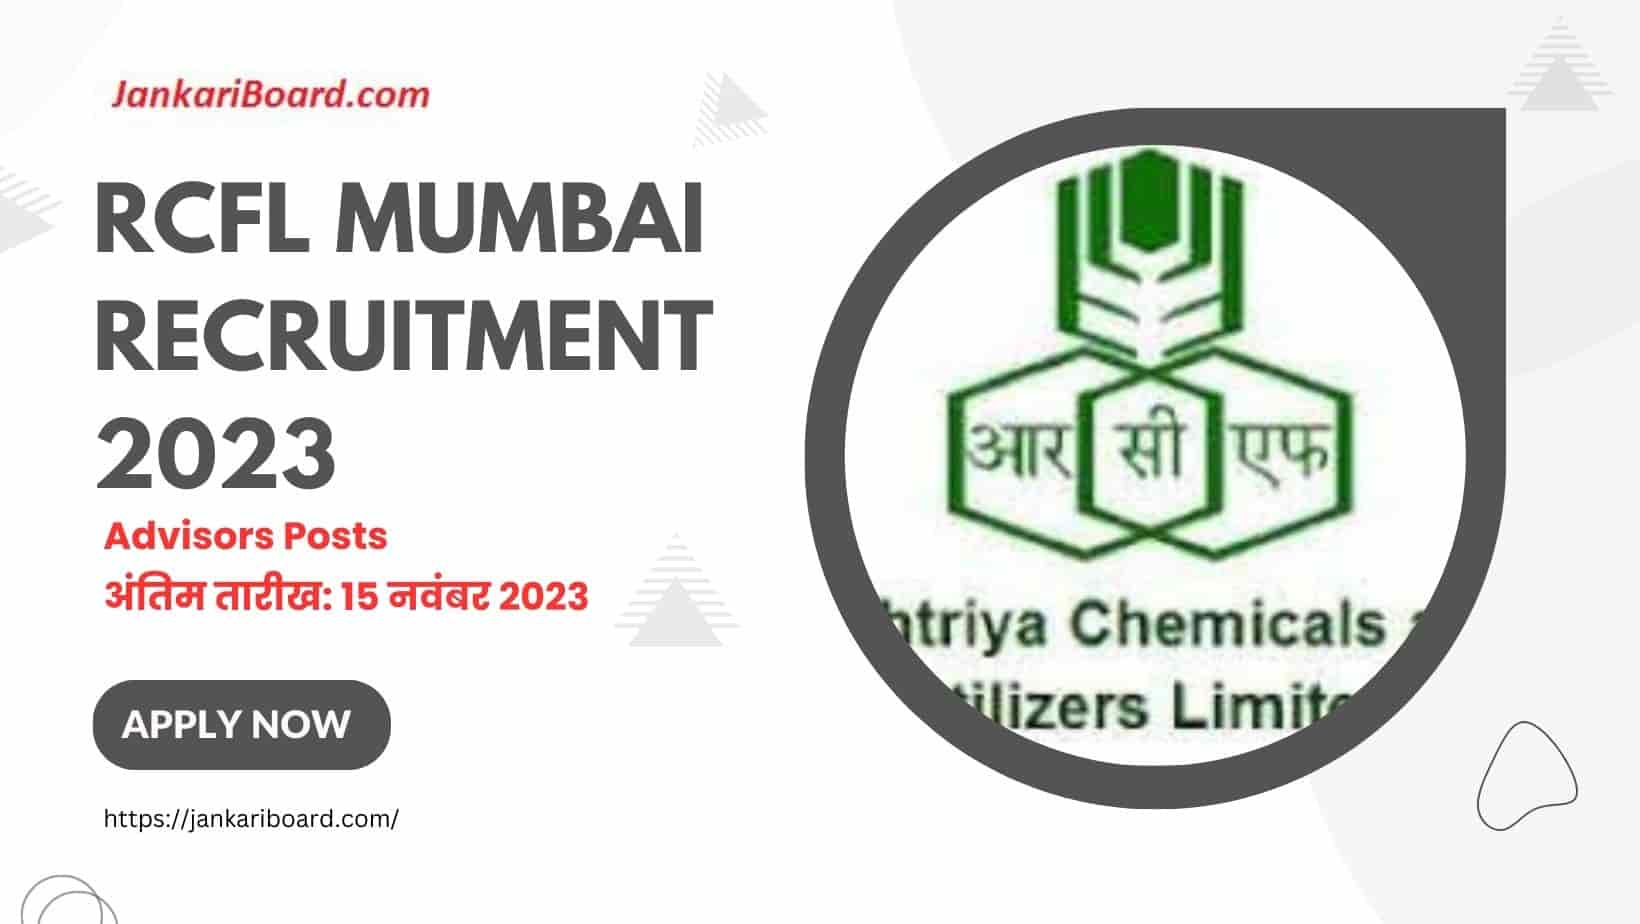 RCFL Mumbai Recruitment 2023